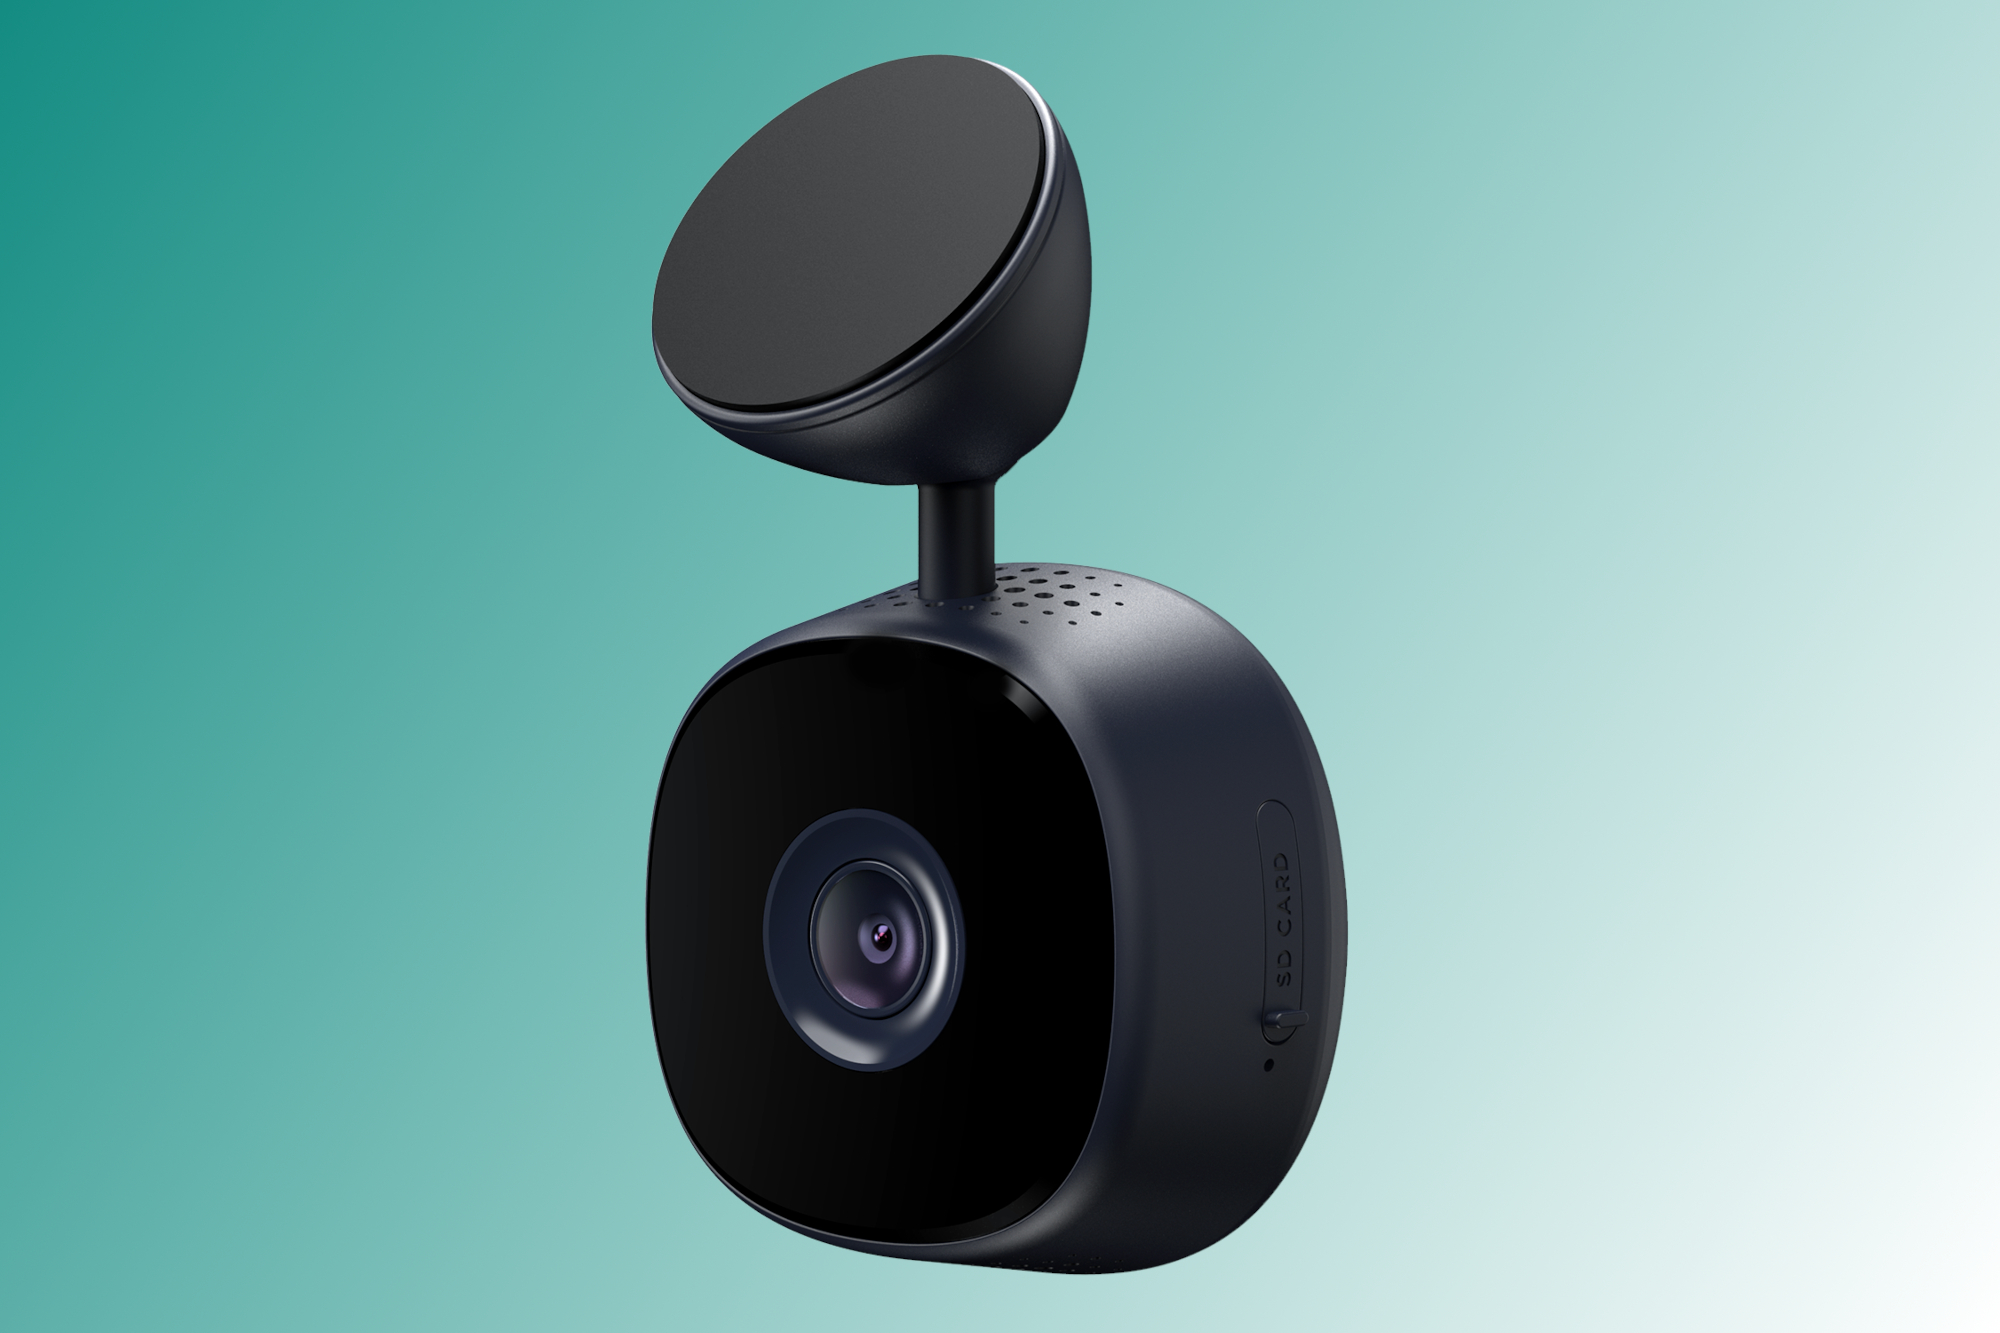 iOttie Aivo View - Meest stealth-camera alleen aan de voorkant